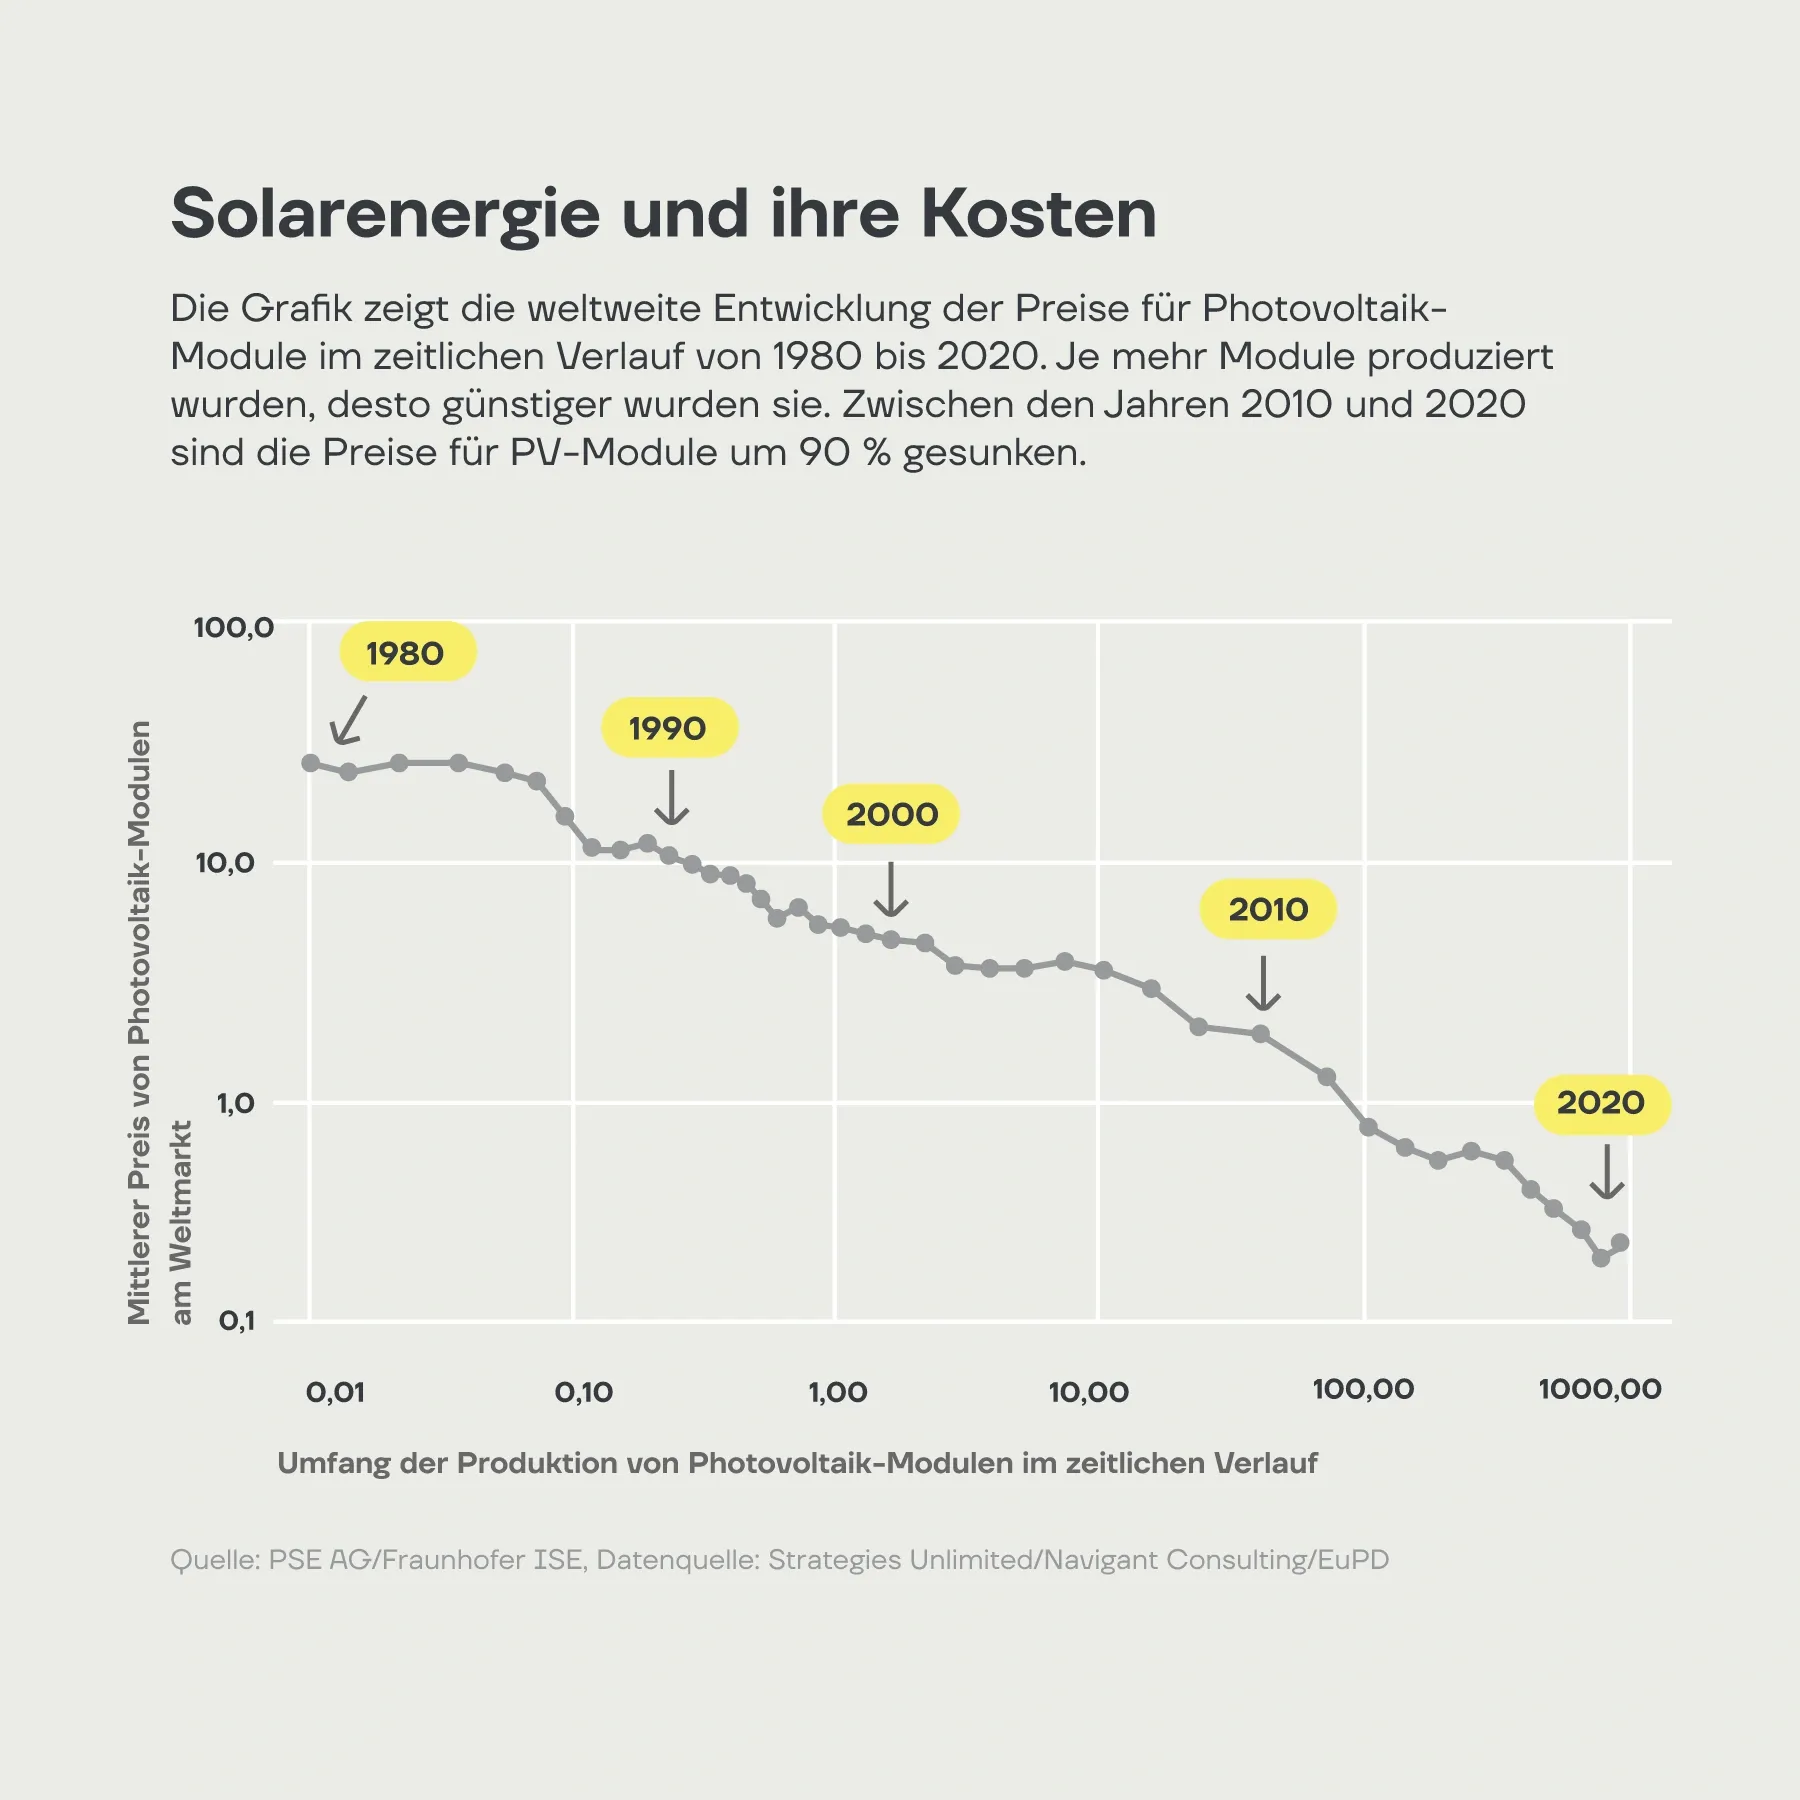 Preisentwicklung für Photovoltaikmodule seit 1980. Der Trend ist durch die Gerade dargestellt. 